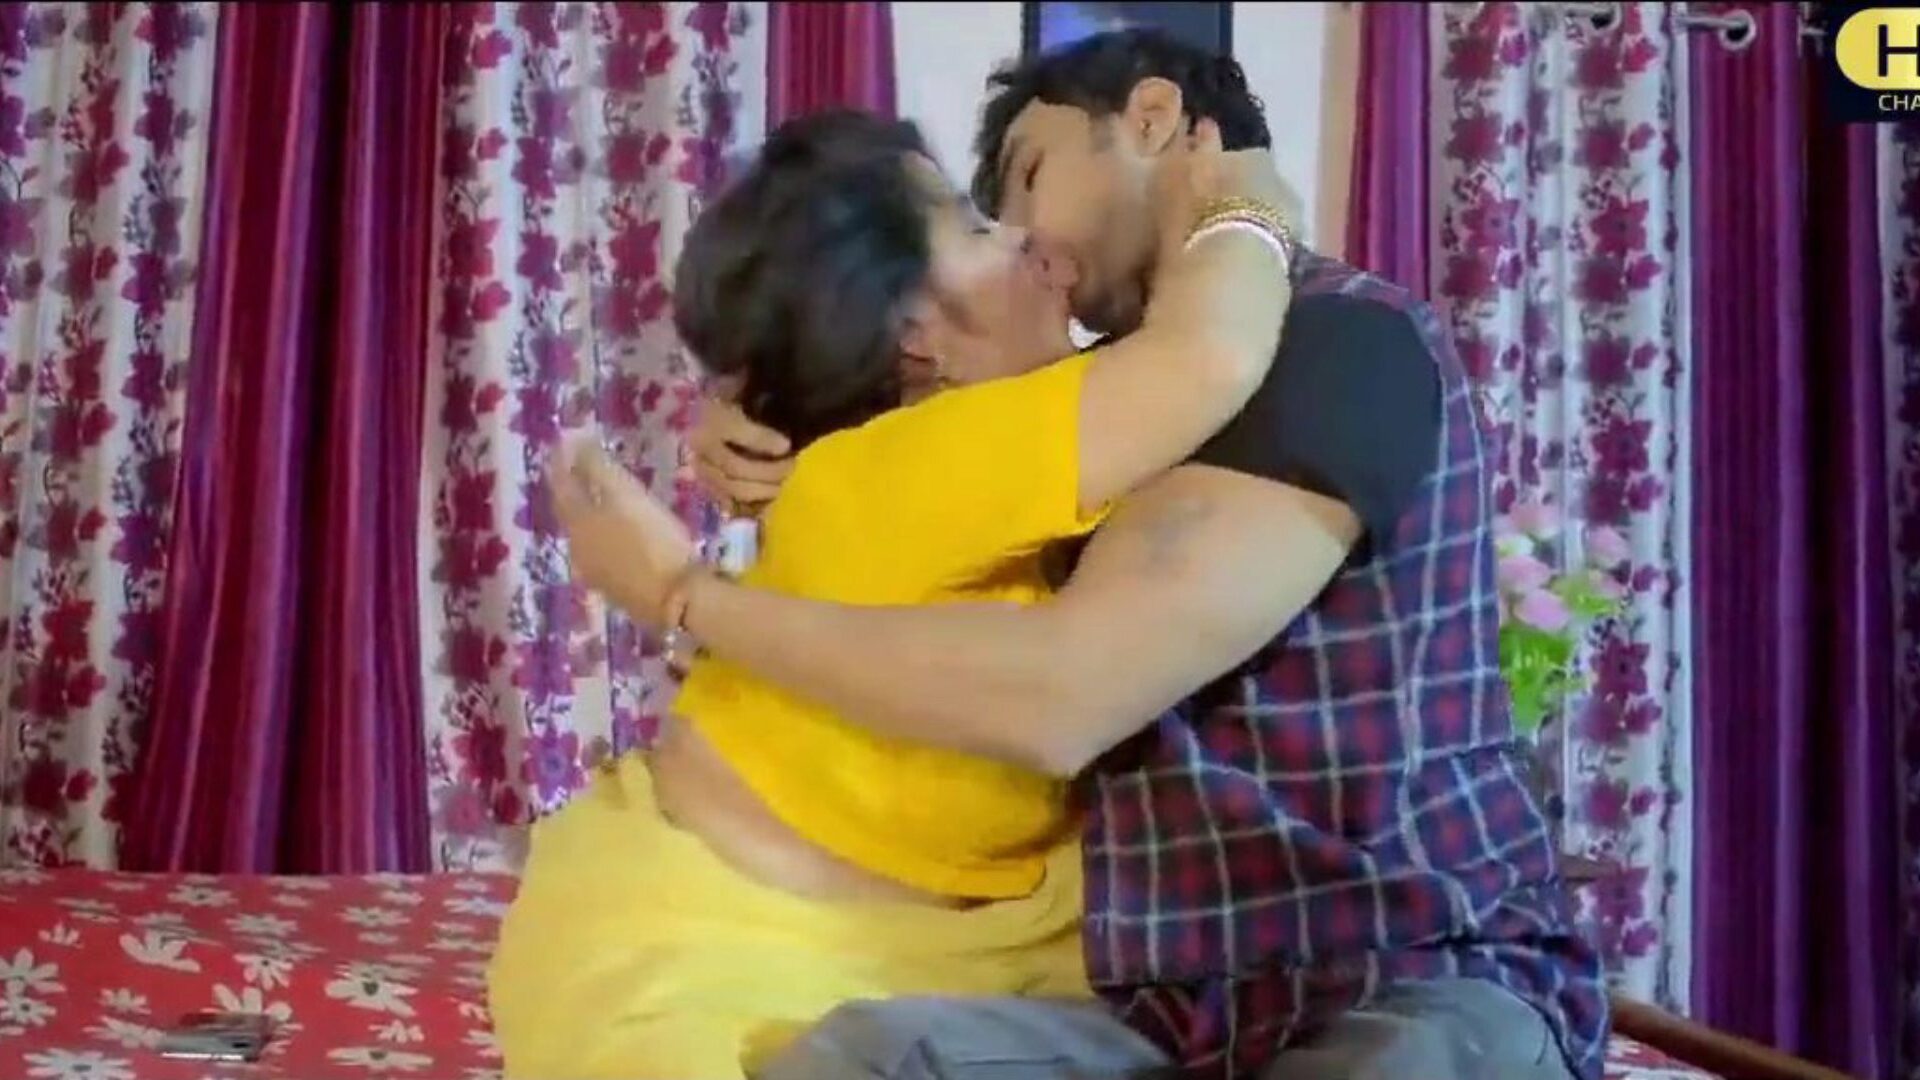 soția indiană și dever aceasta este scena filmului indian proaspăt căsătorită soția și dever cocoș vidios uita-te la acest videoclip total